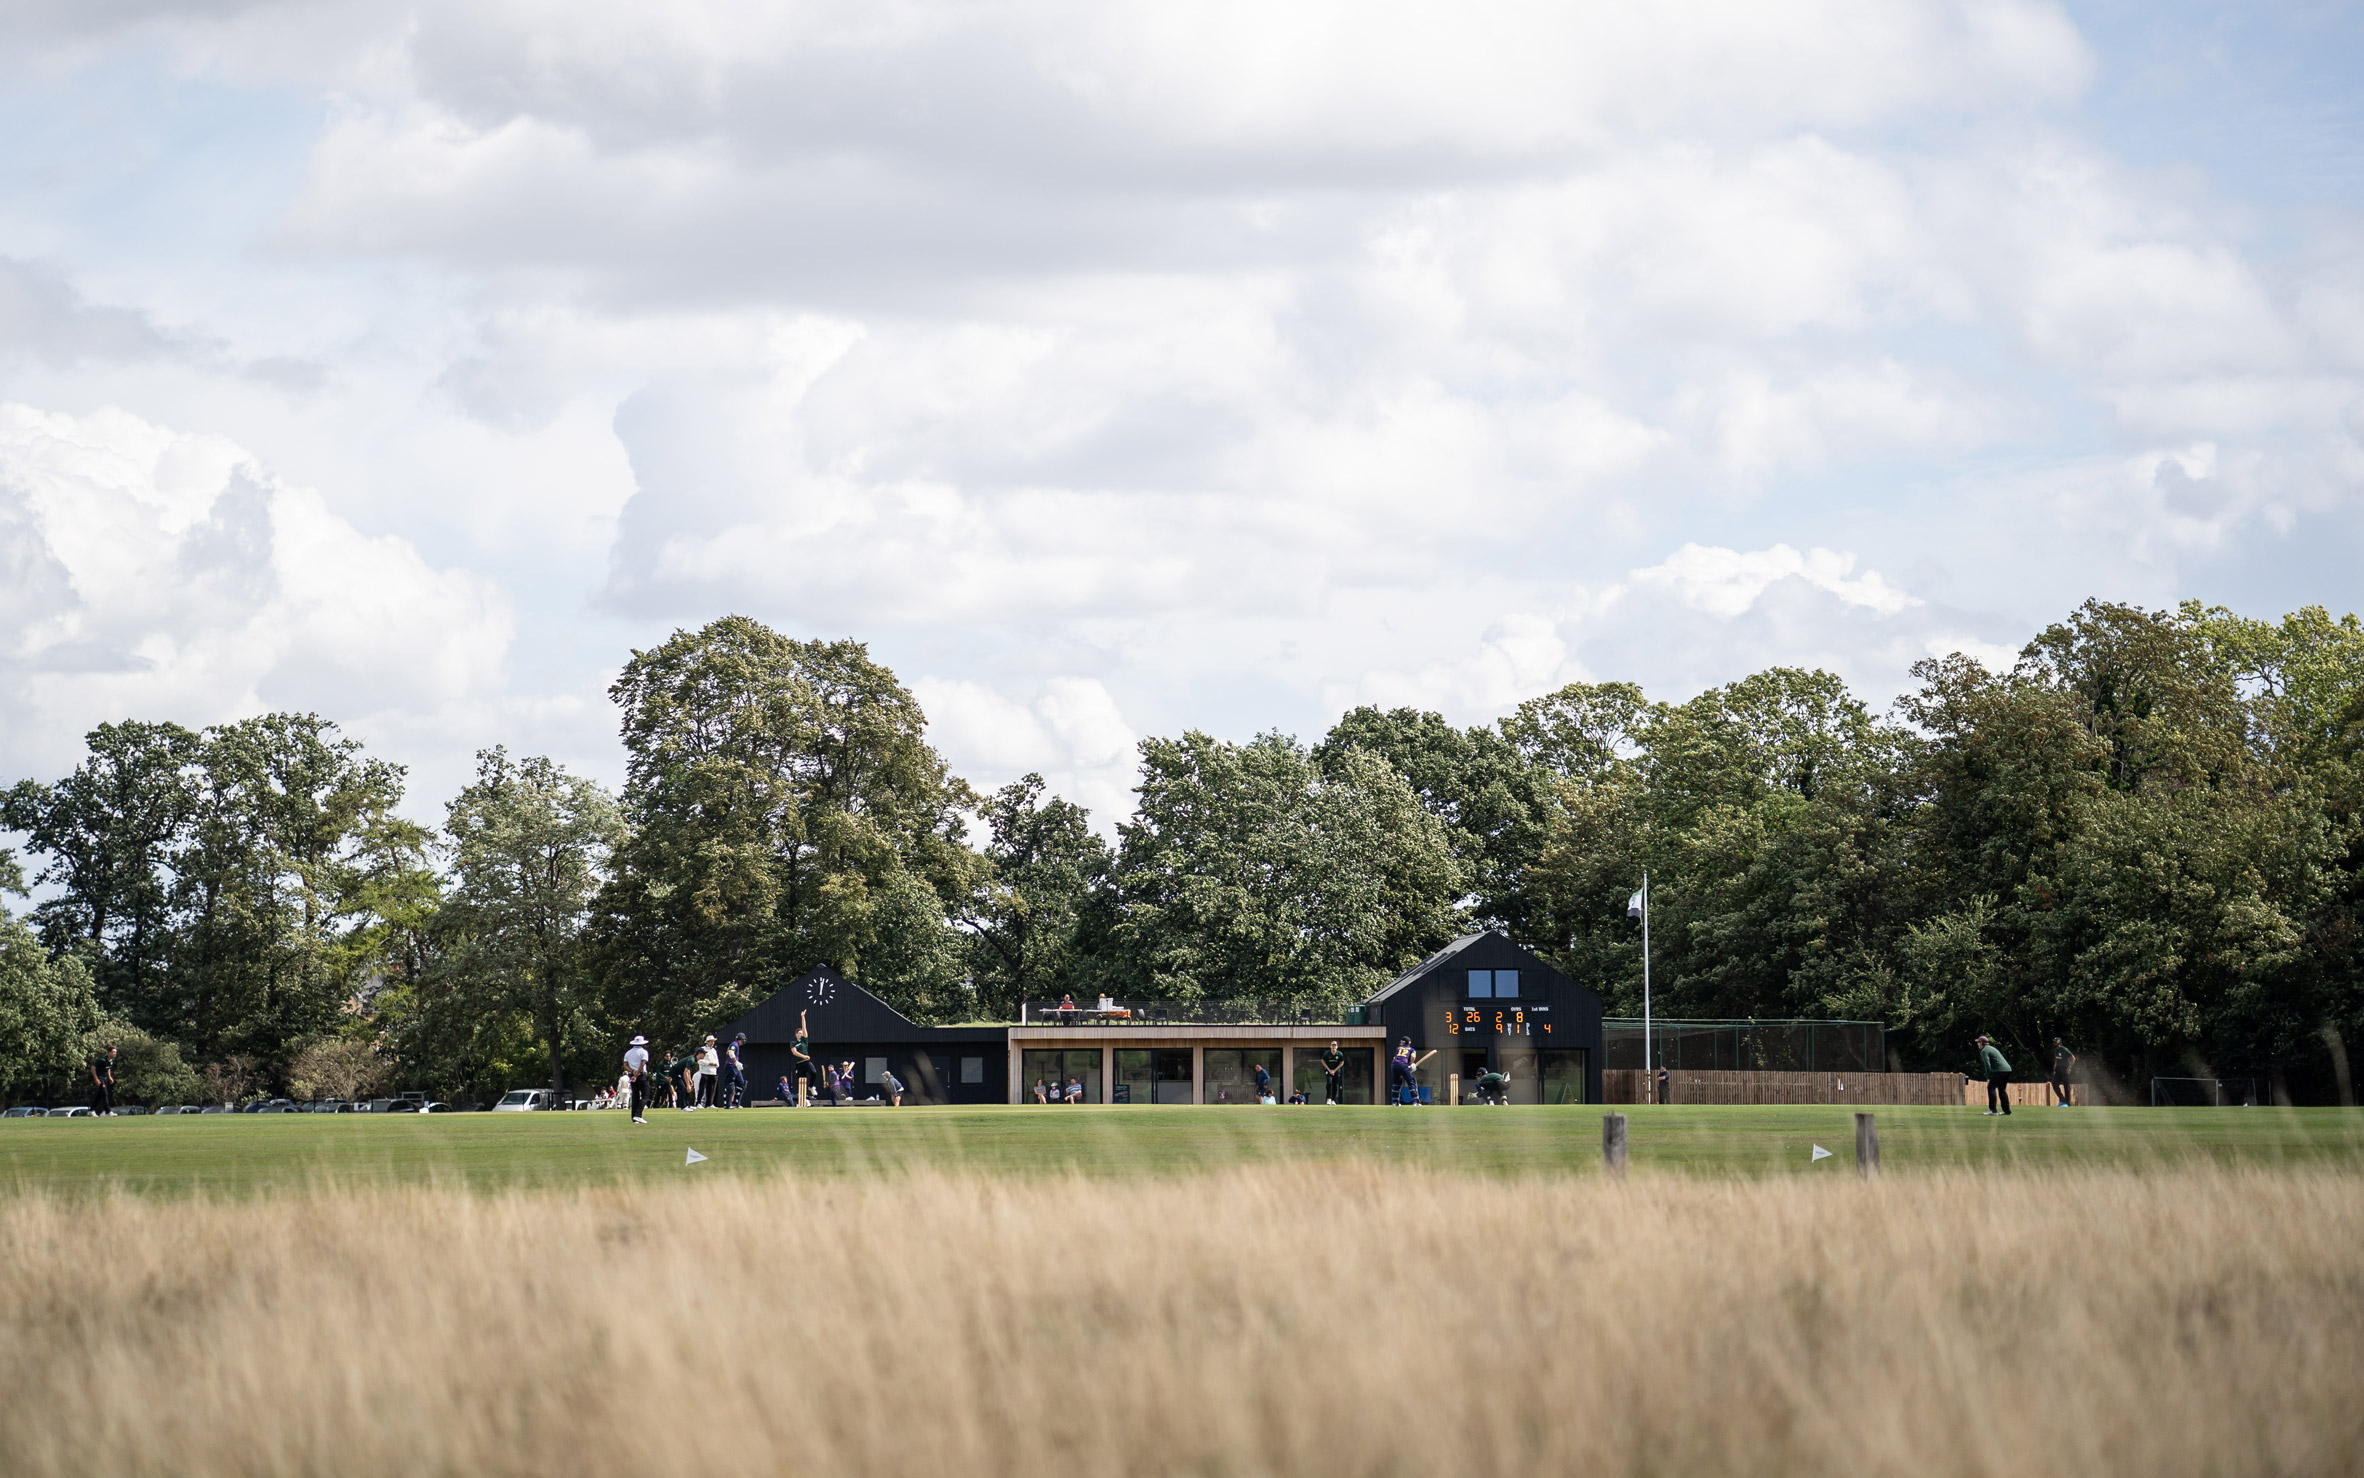 Cricket pavilion in London park